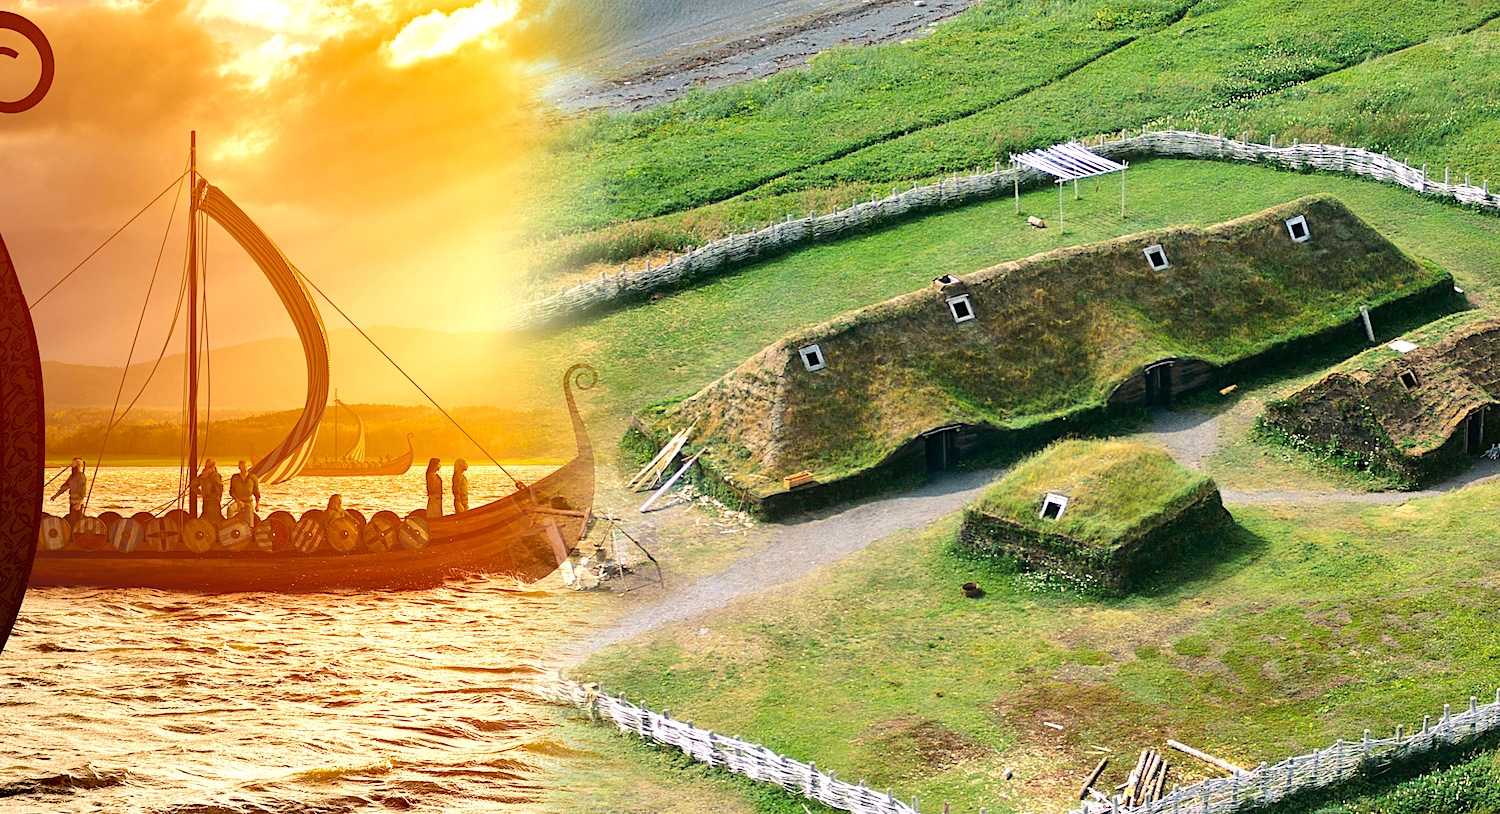 vikings atteint amerique avant Christophe colomb couv